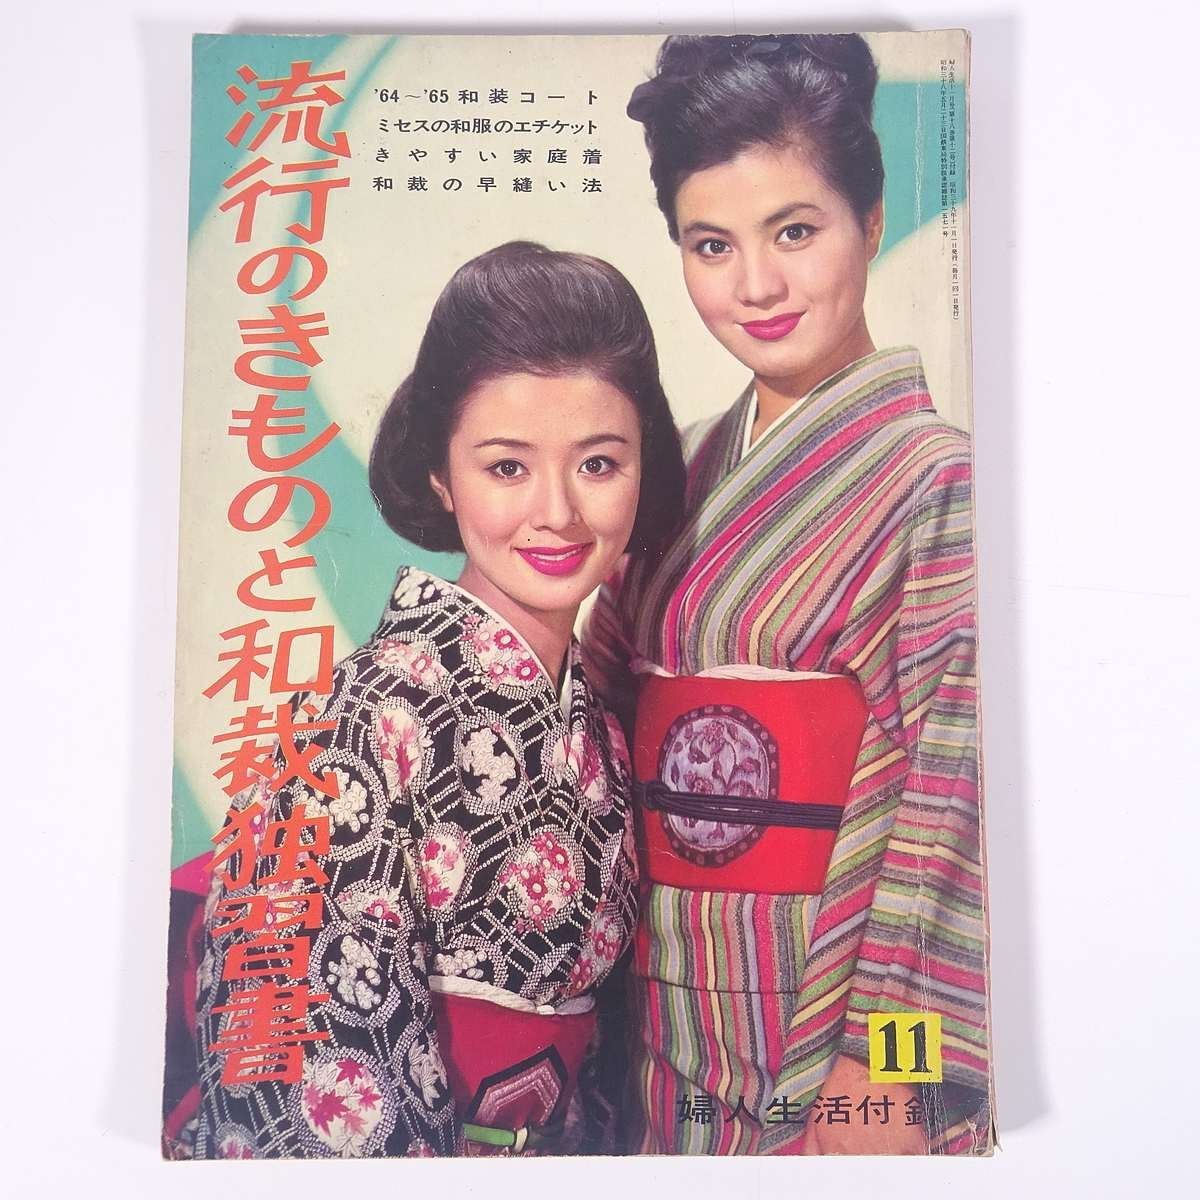  мода. кимоно . кройка и шитье японской одежды .. документ журнал дополнение ( женщина жизнь ) женщина жизнь фирма 1964 Showa большой книга@ рукоделие шитье кройка и шитье японской одежды японская одежда 